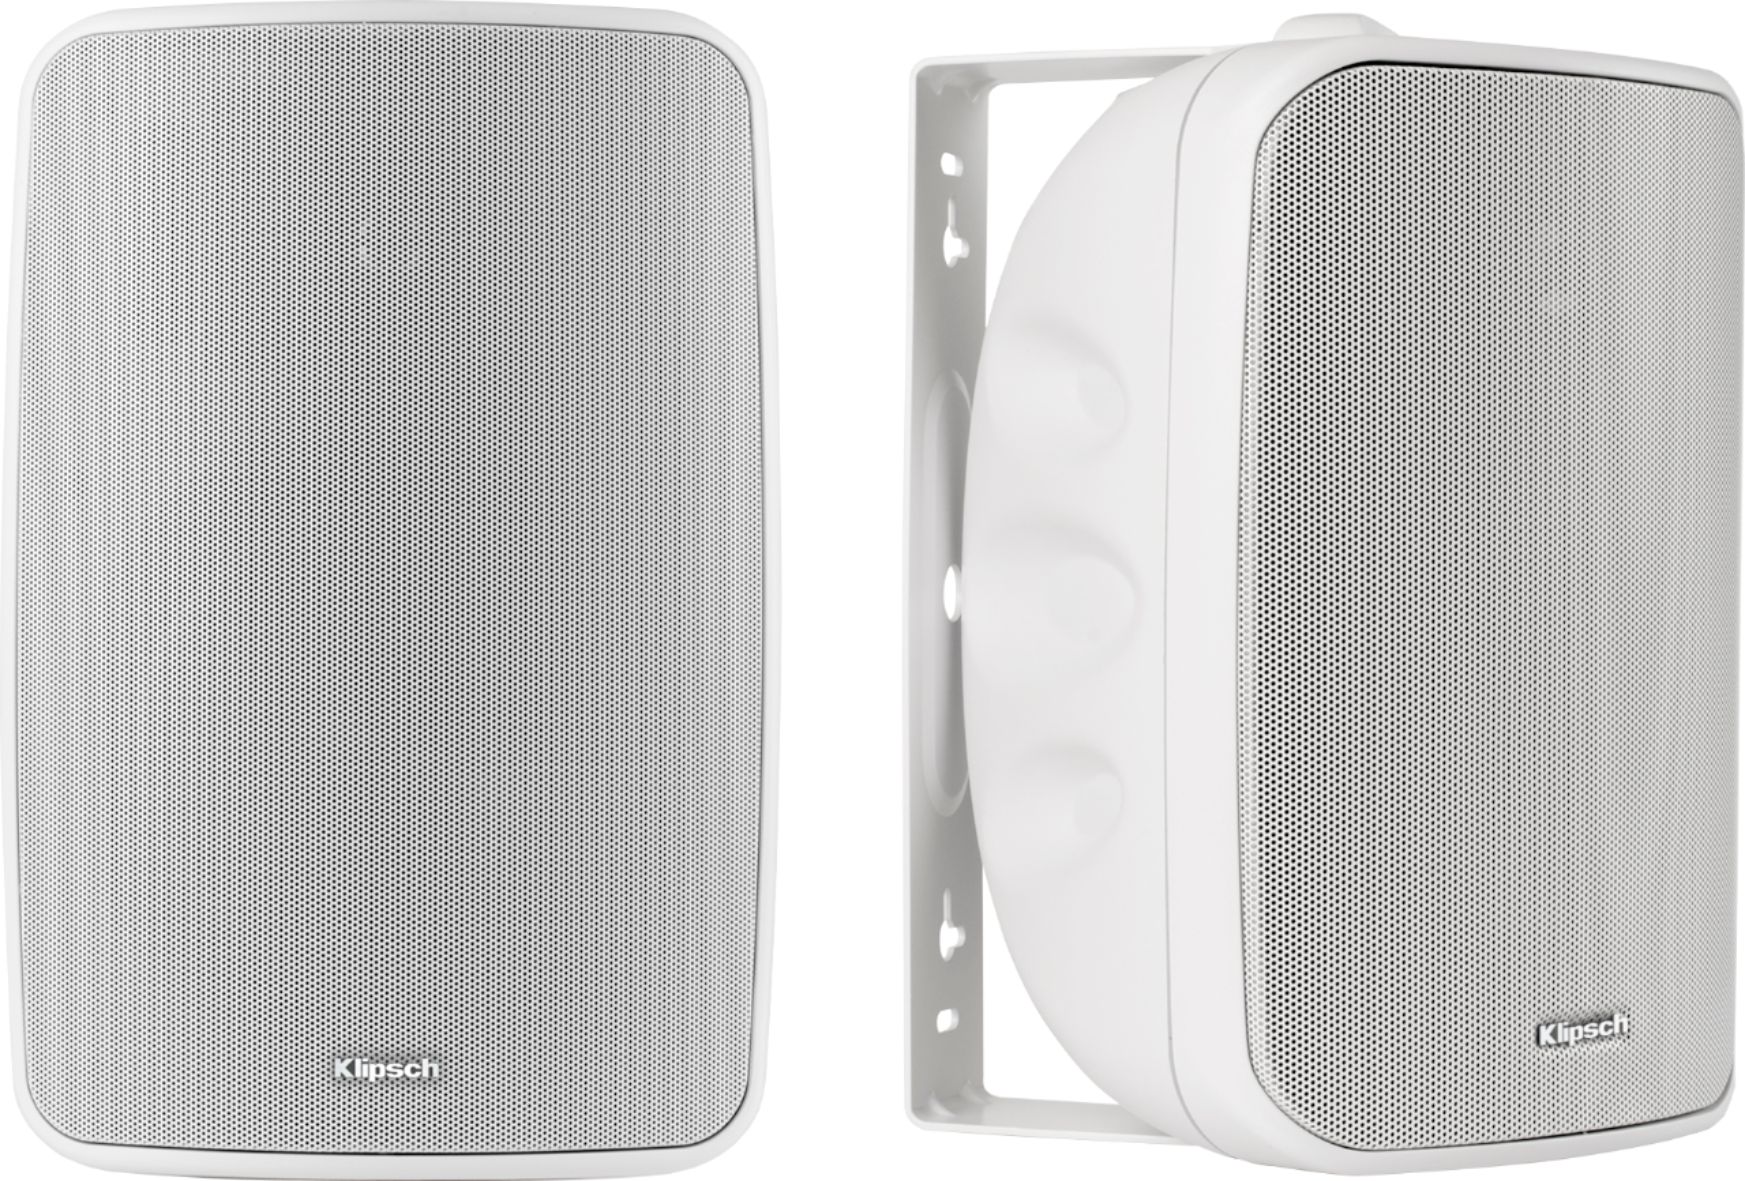 Klipsch - KIO-650 Indoor/Outdoor All-Weather Speakers (pair) - White